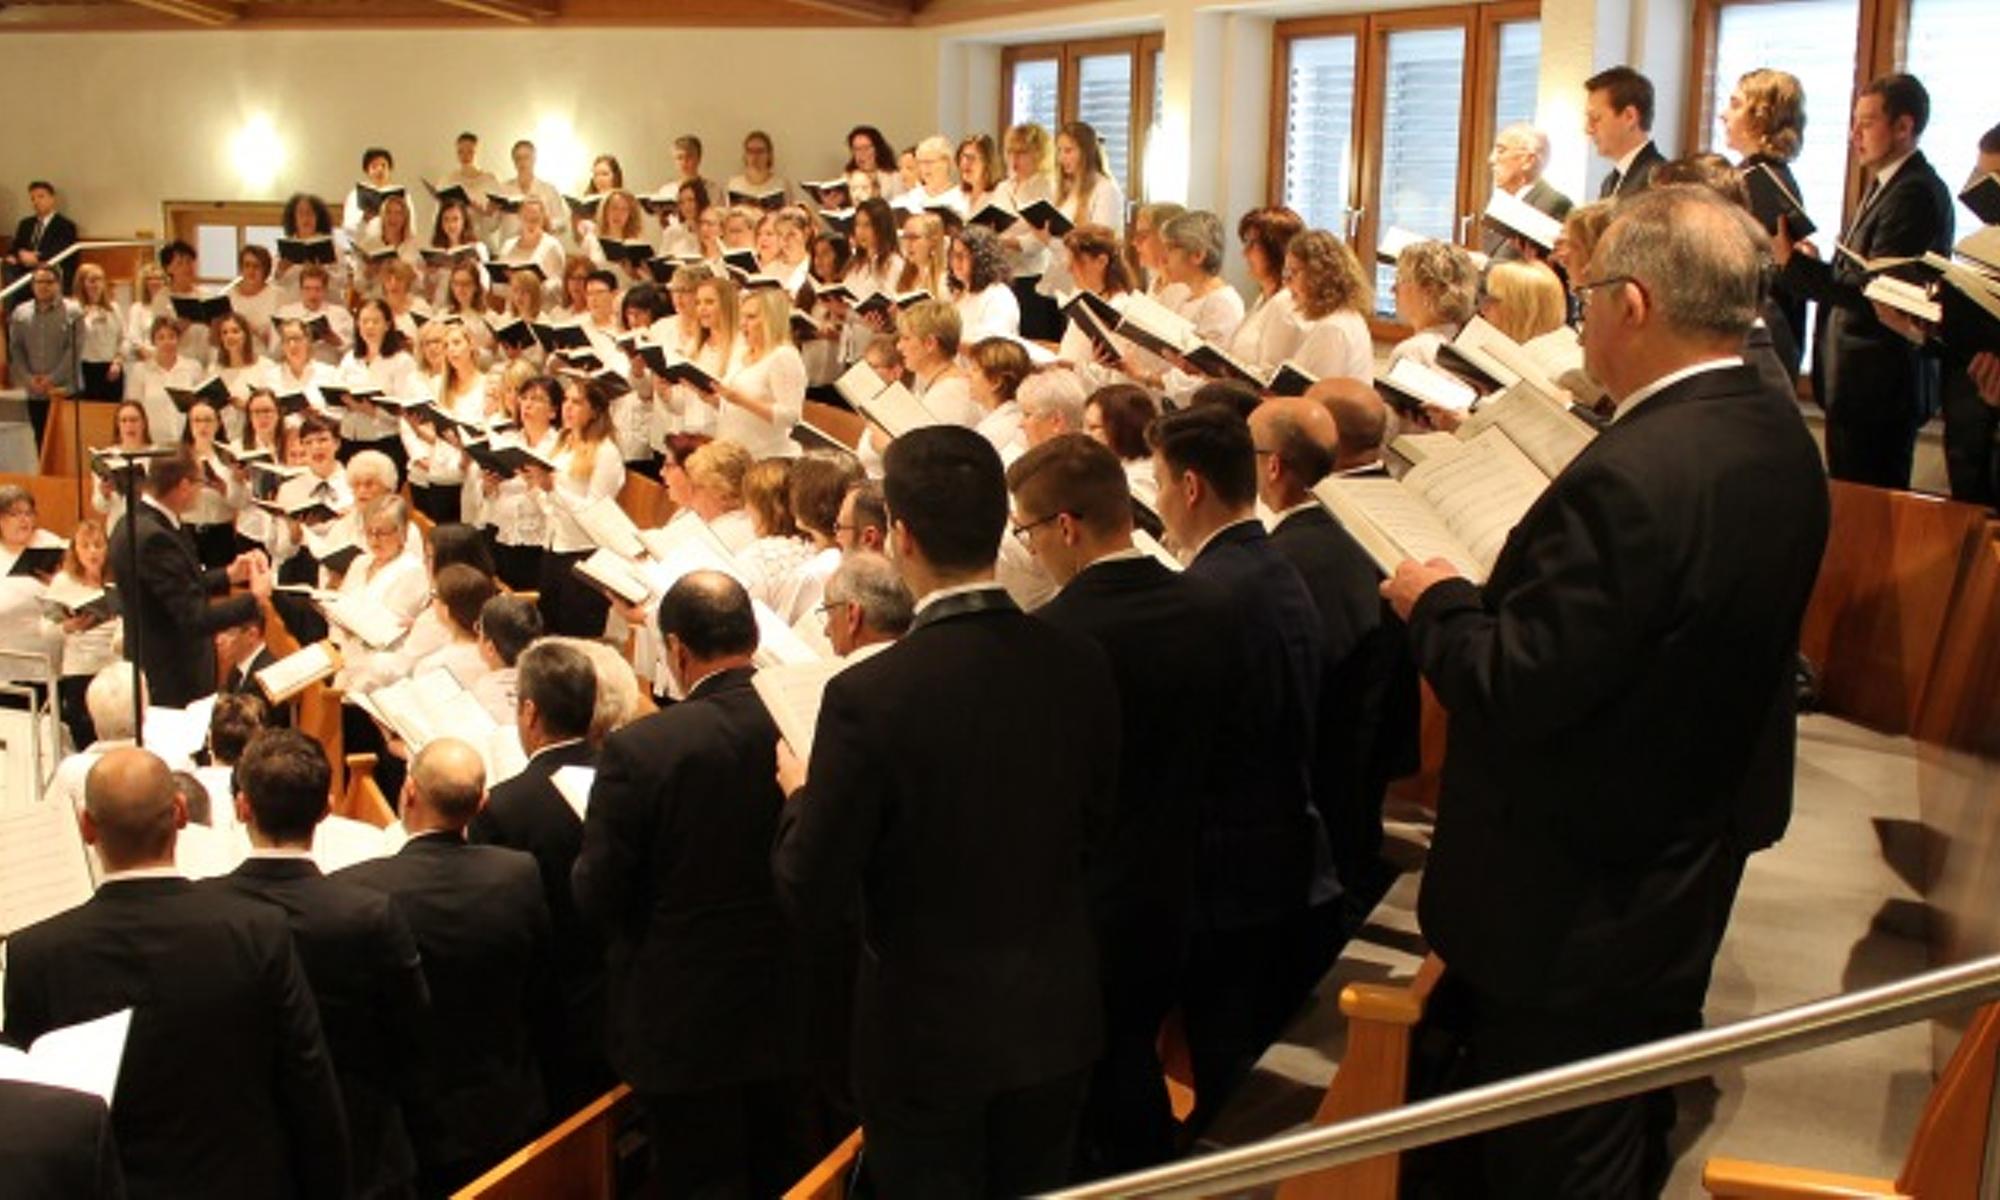 musikalische Gottesdienst-Mitgestaltung durch den Chor ...